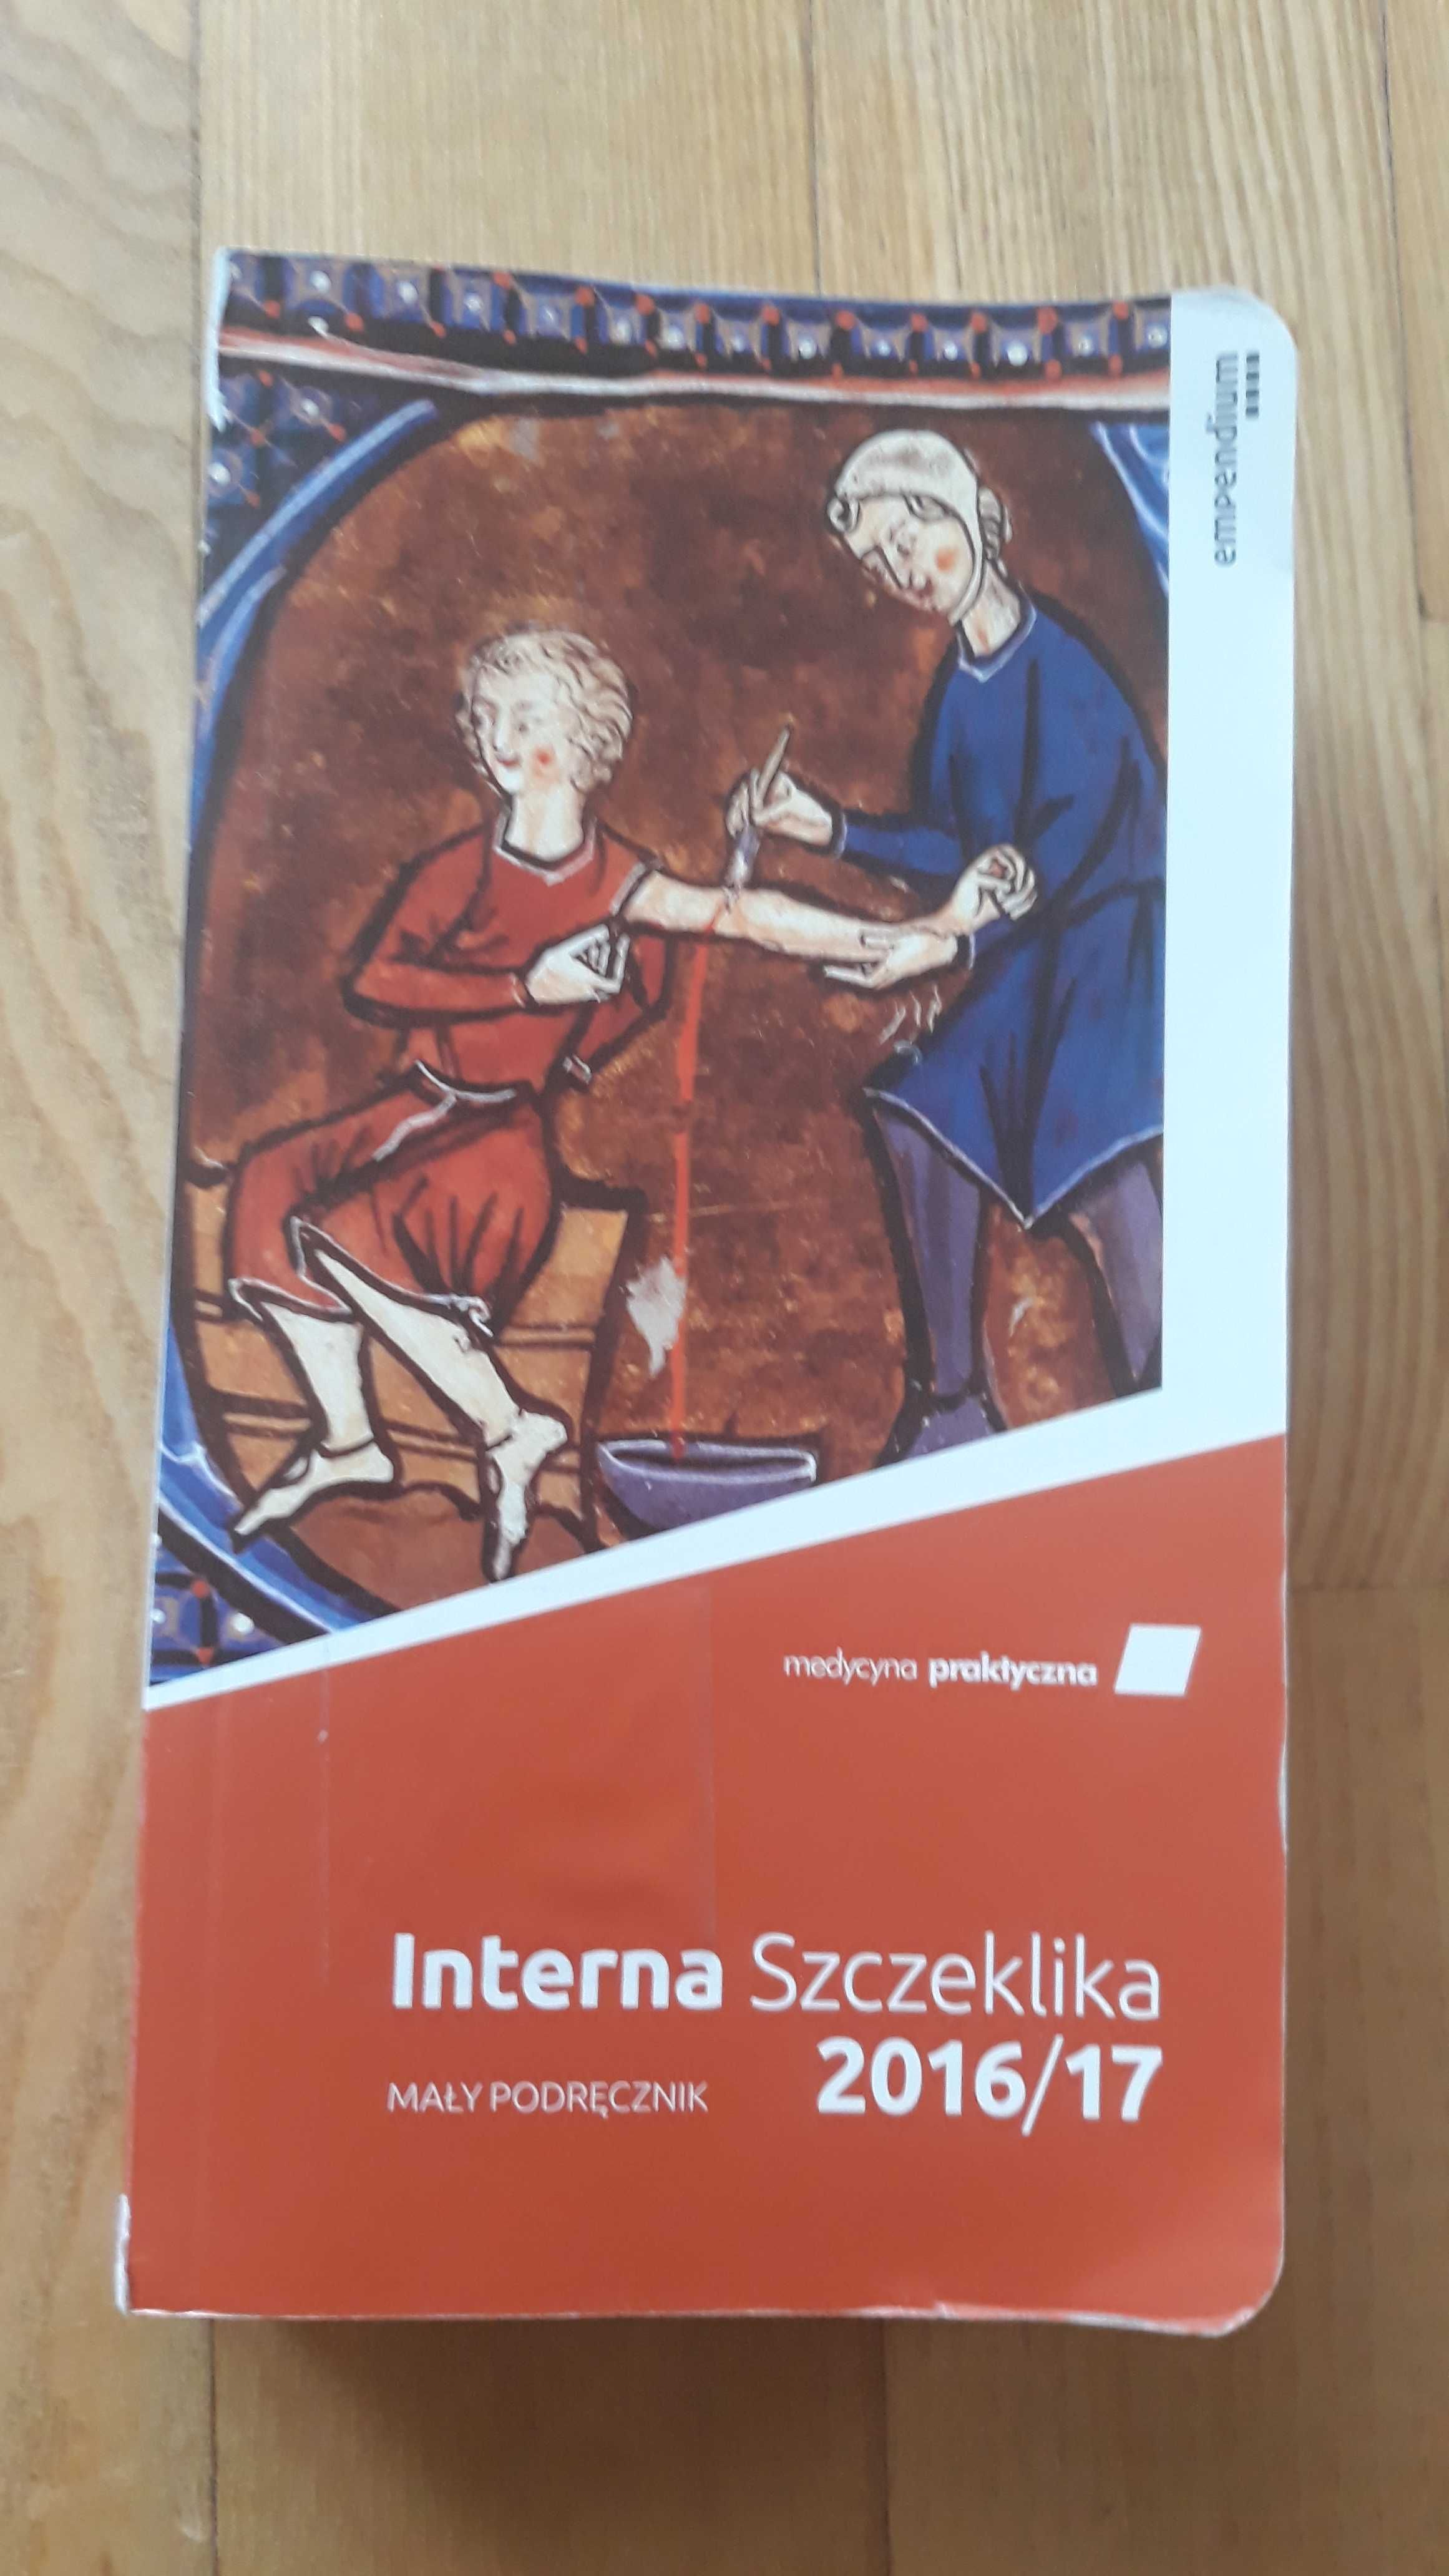 Interna Szczeklika 2016/17